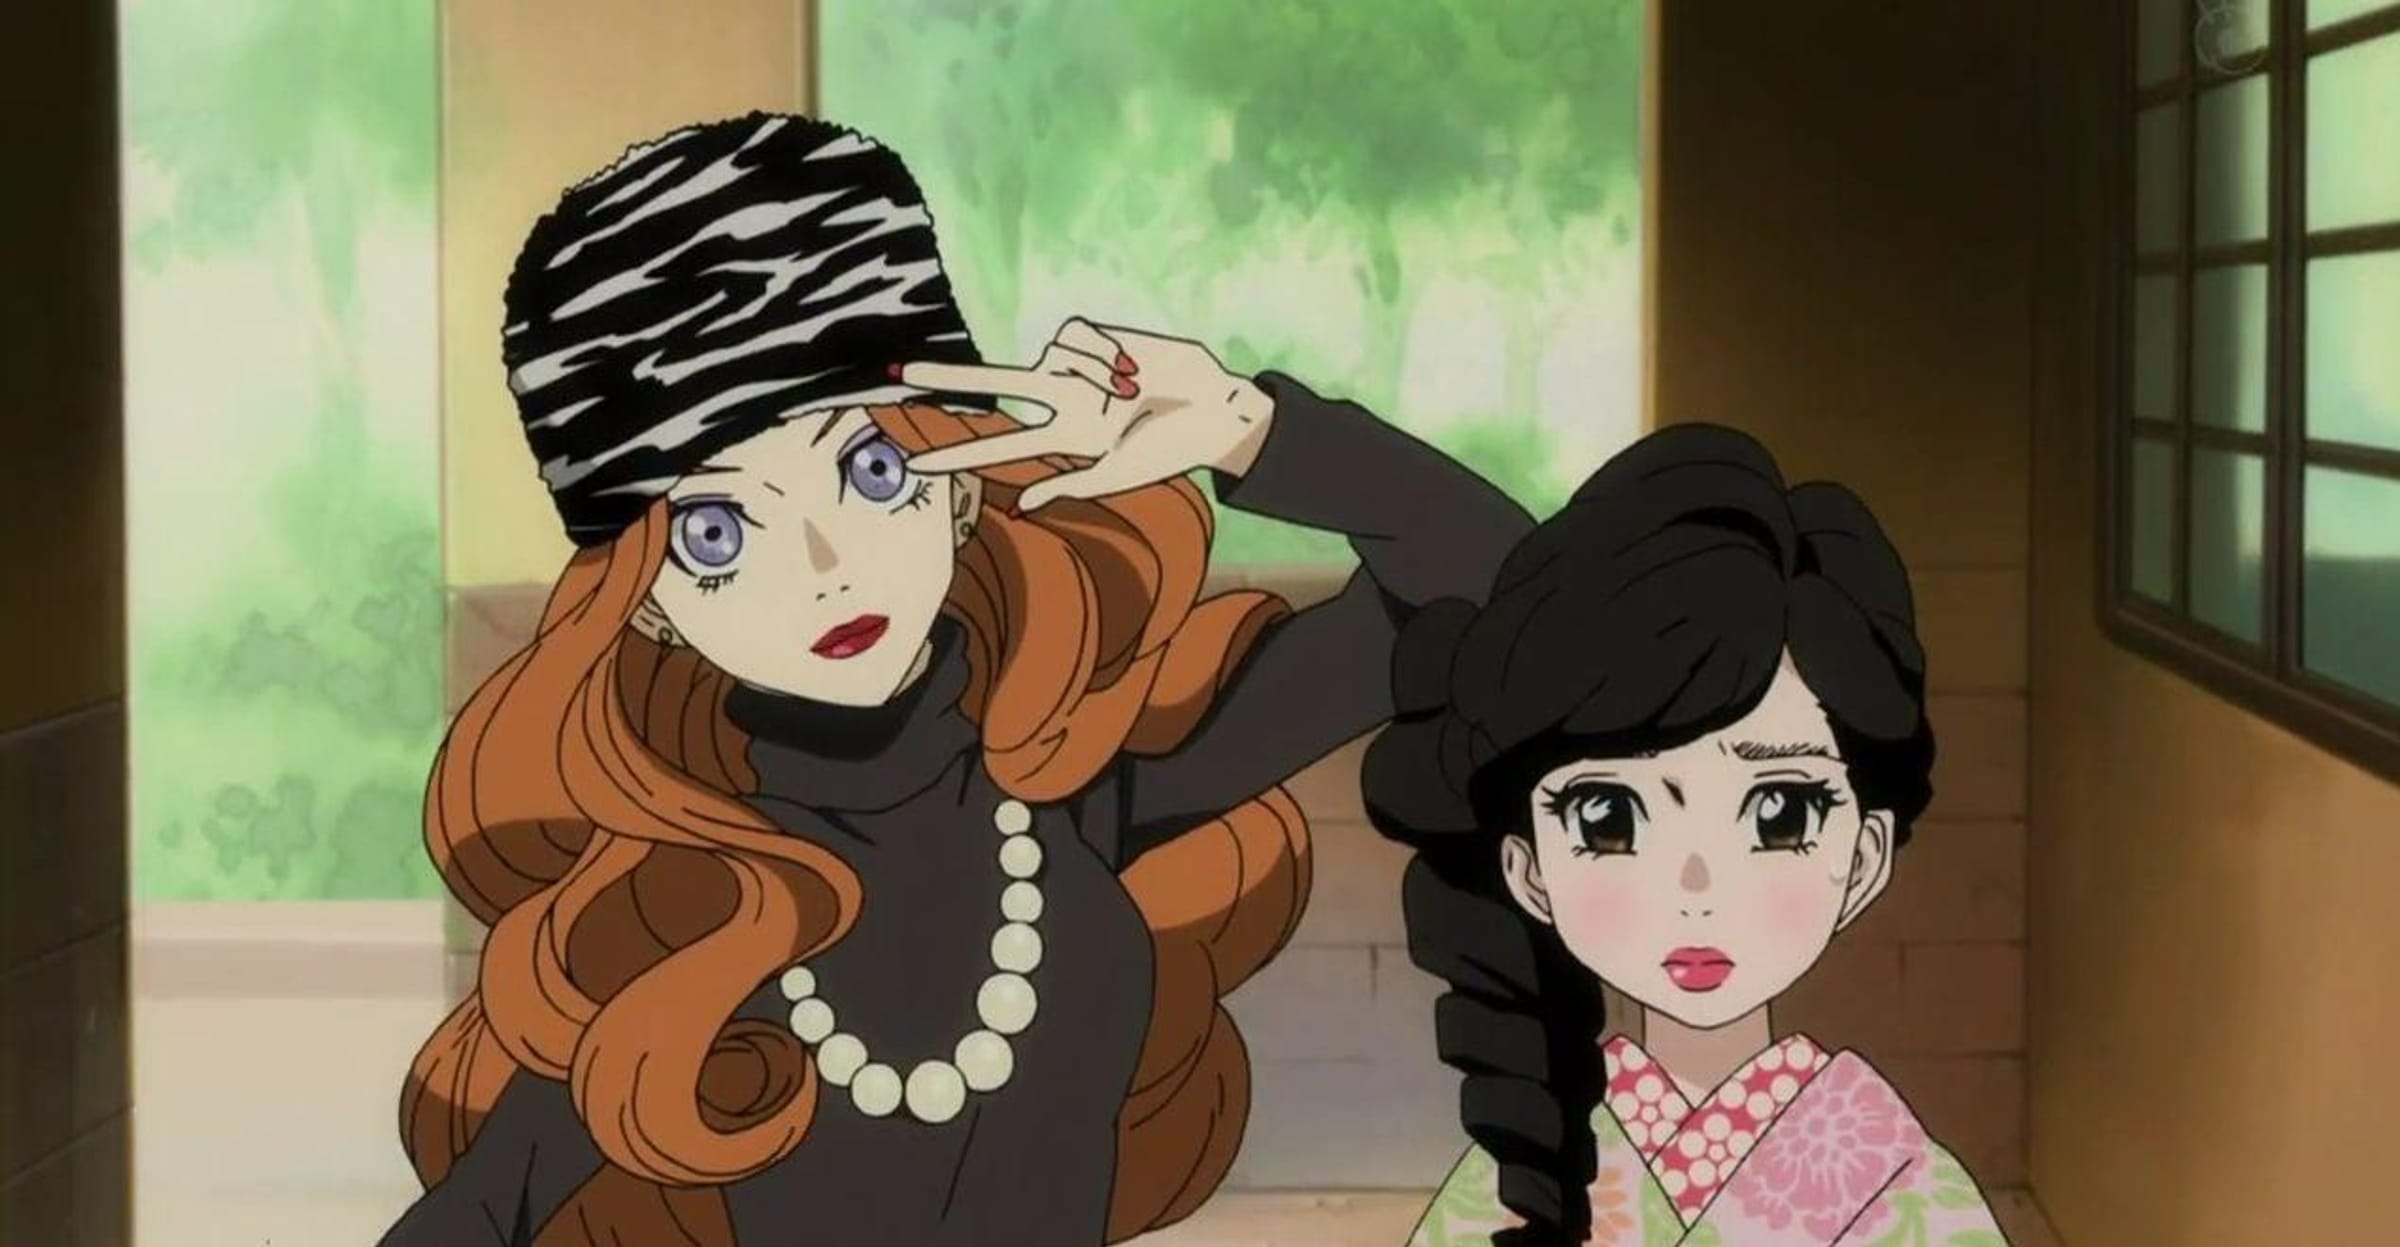 Anime Icons - Anime Hair Color Splash Female Edition